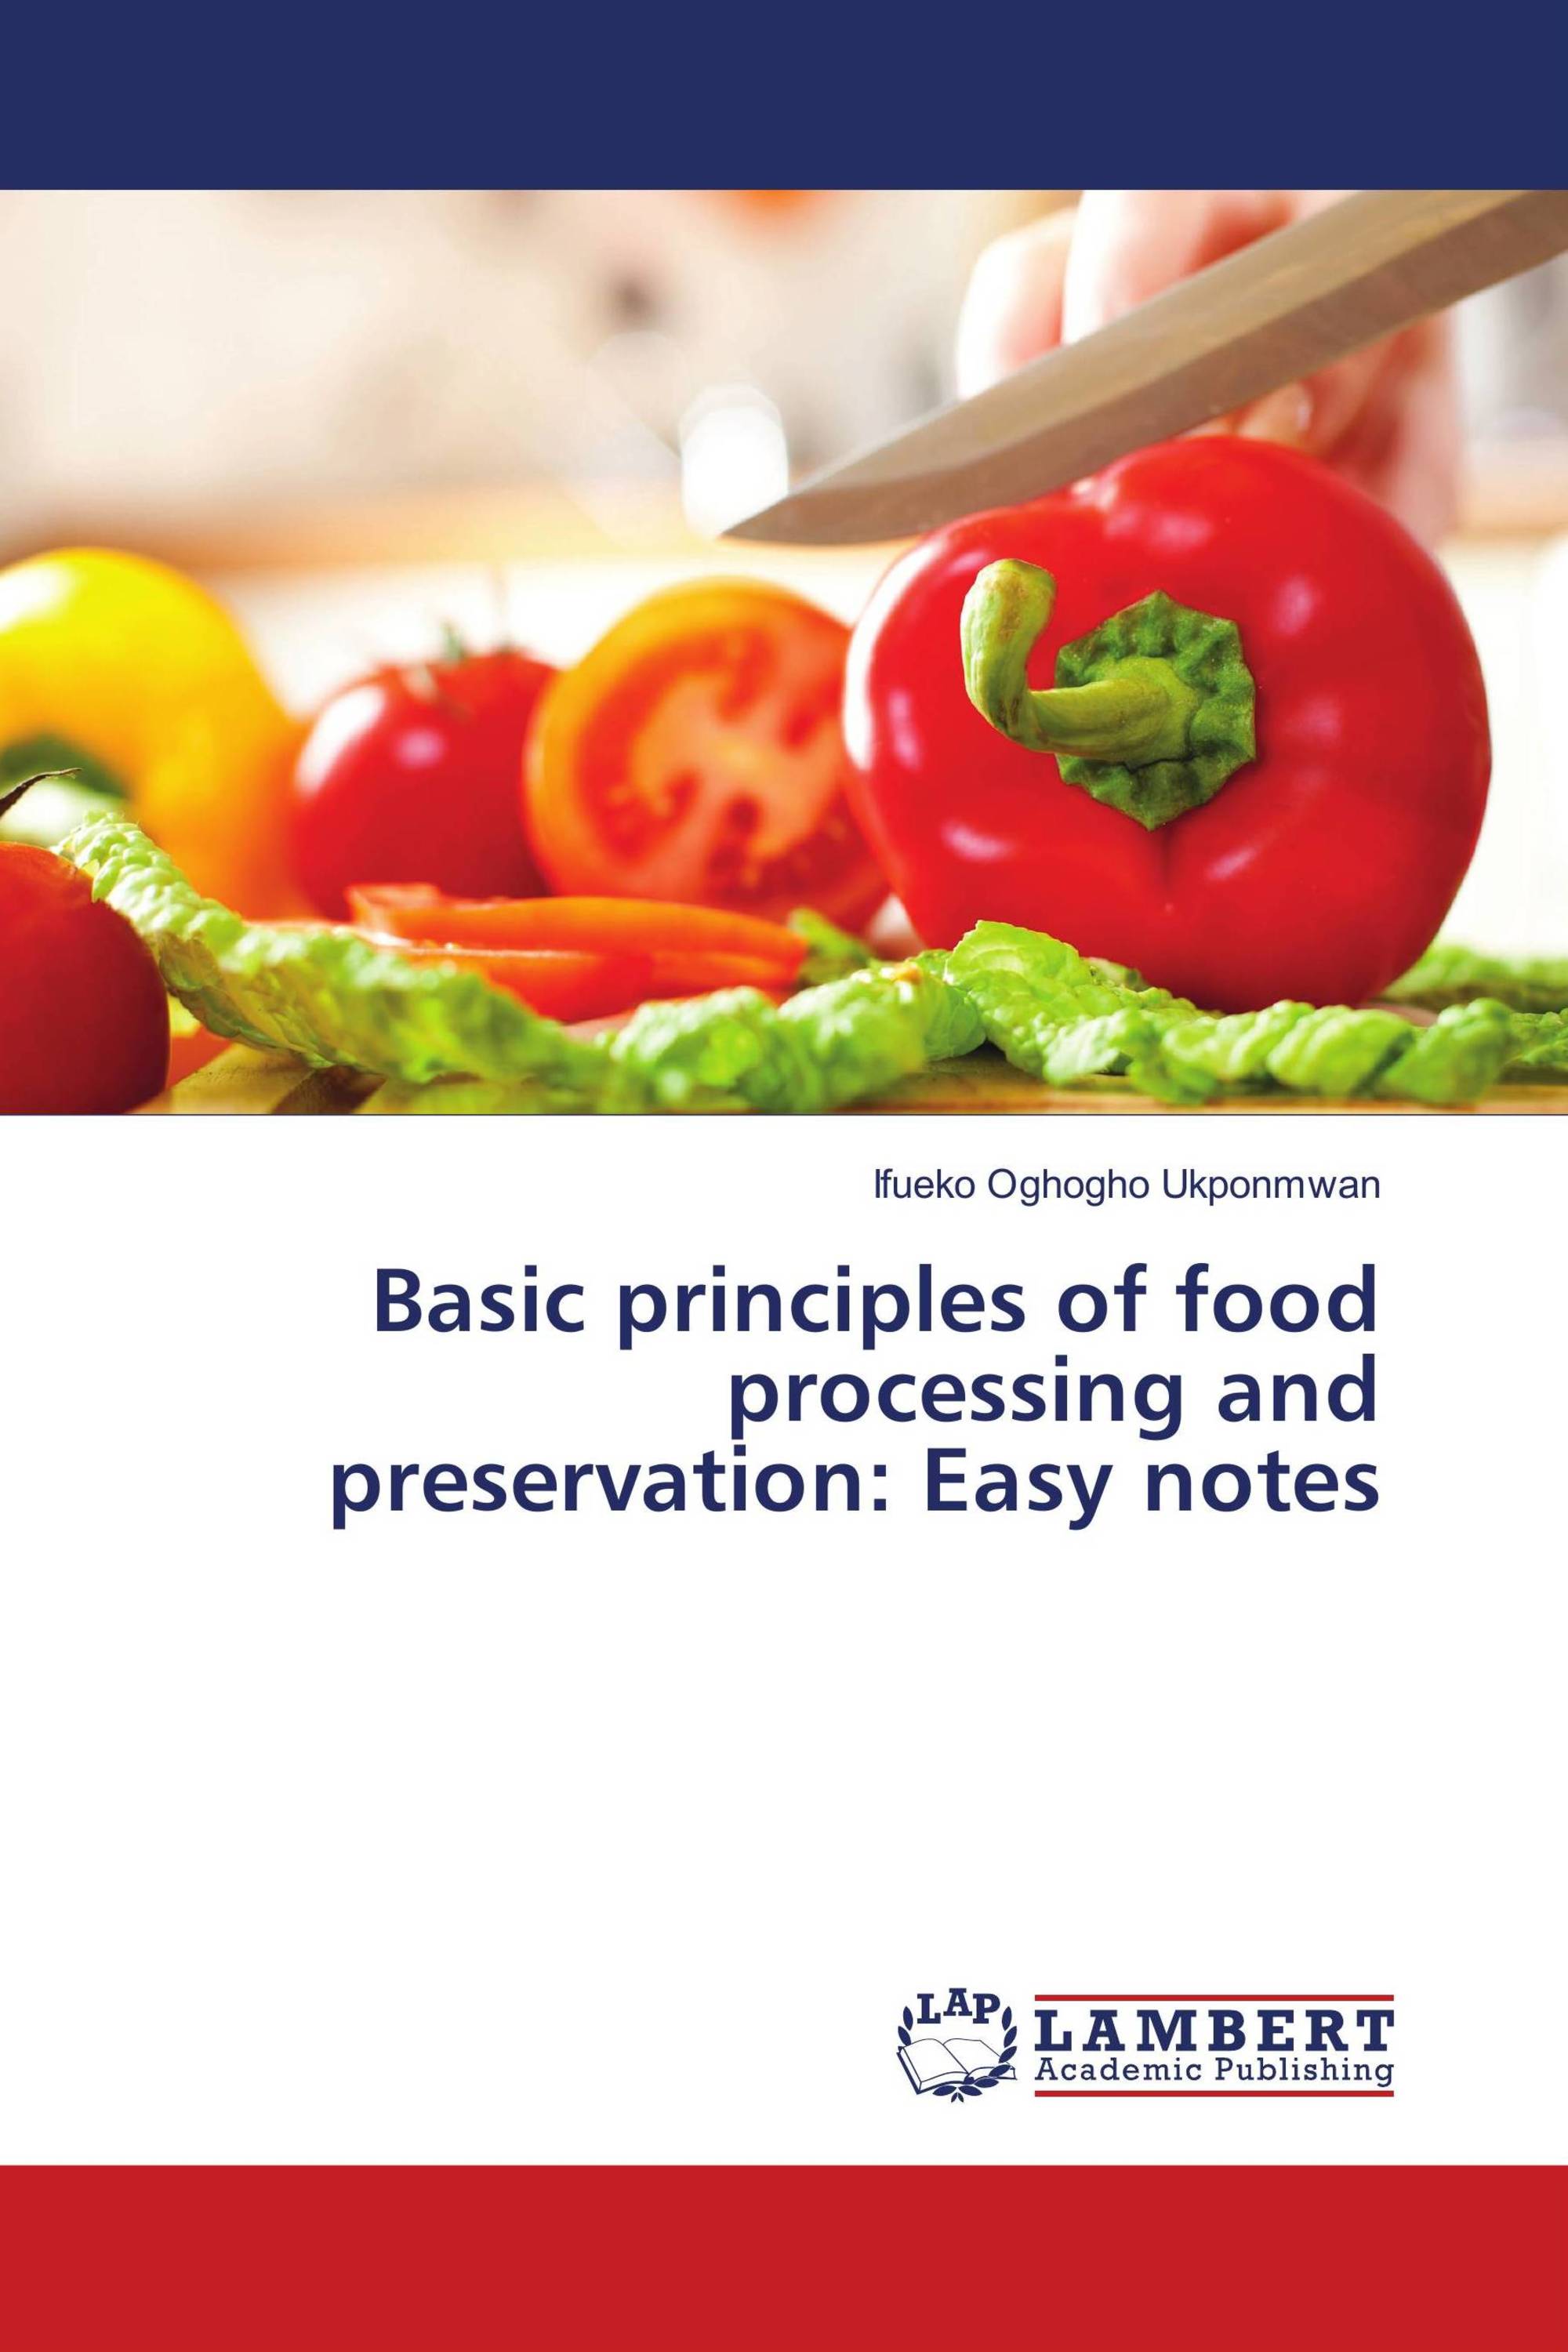 food processing definition essay